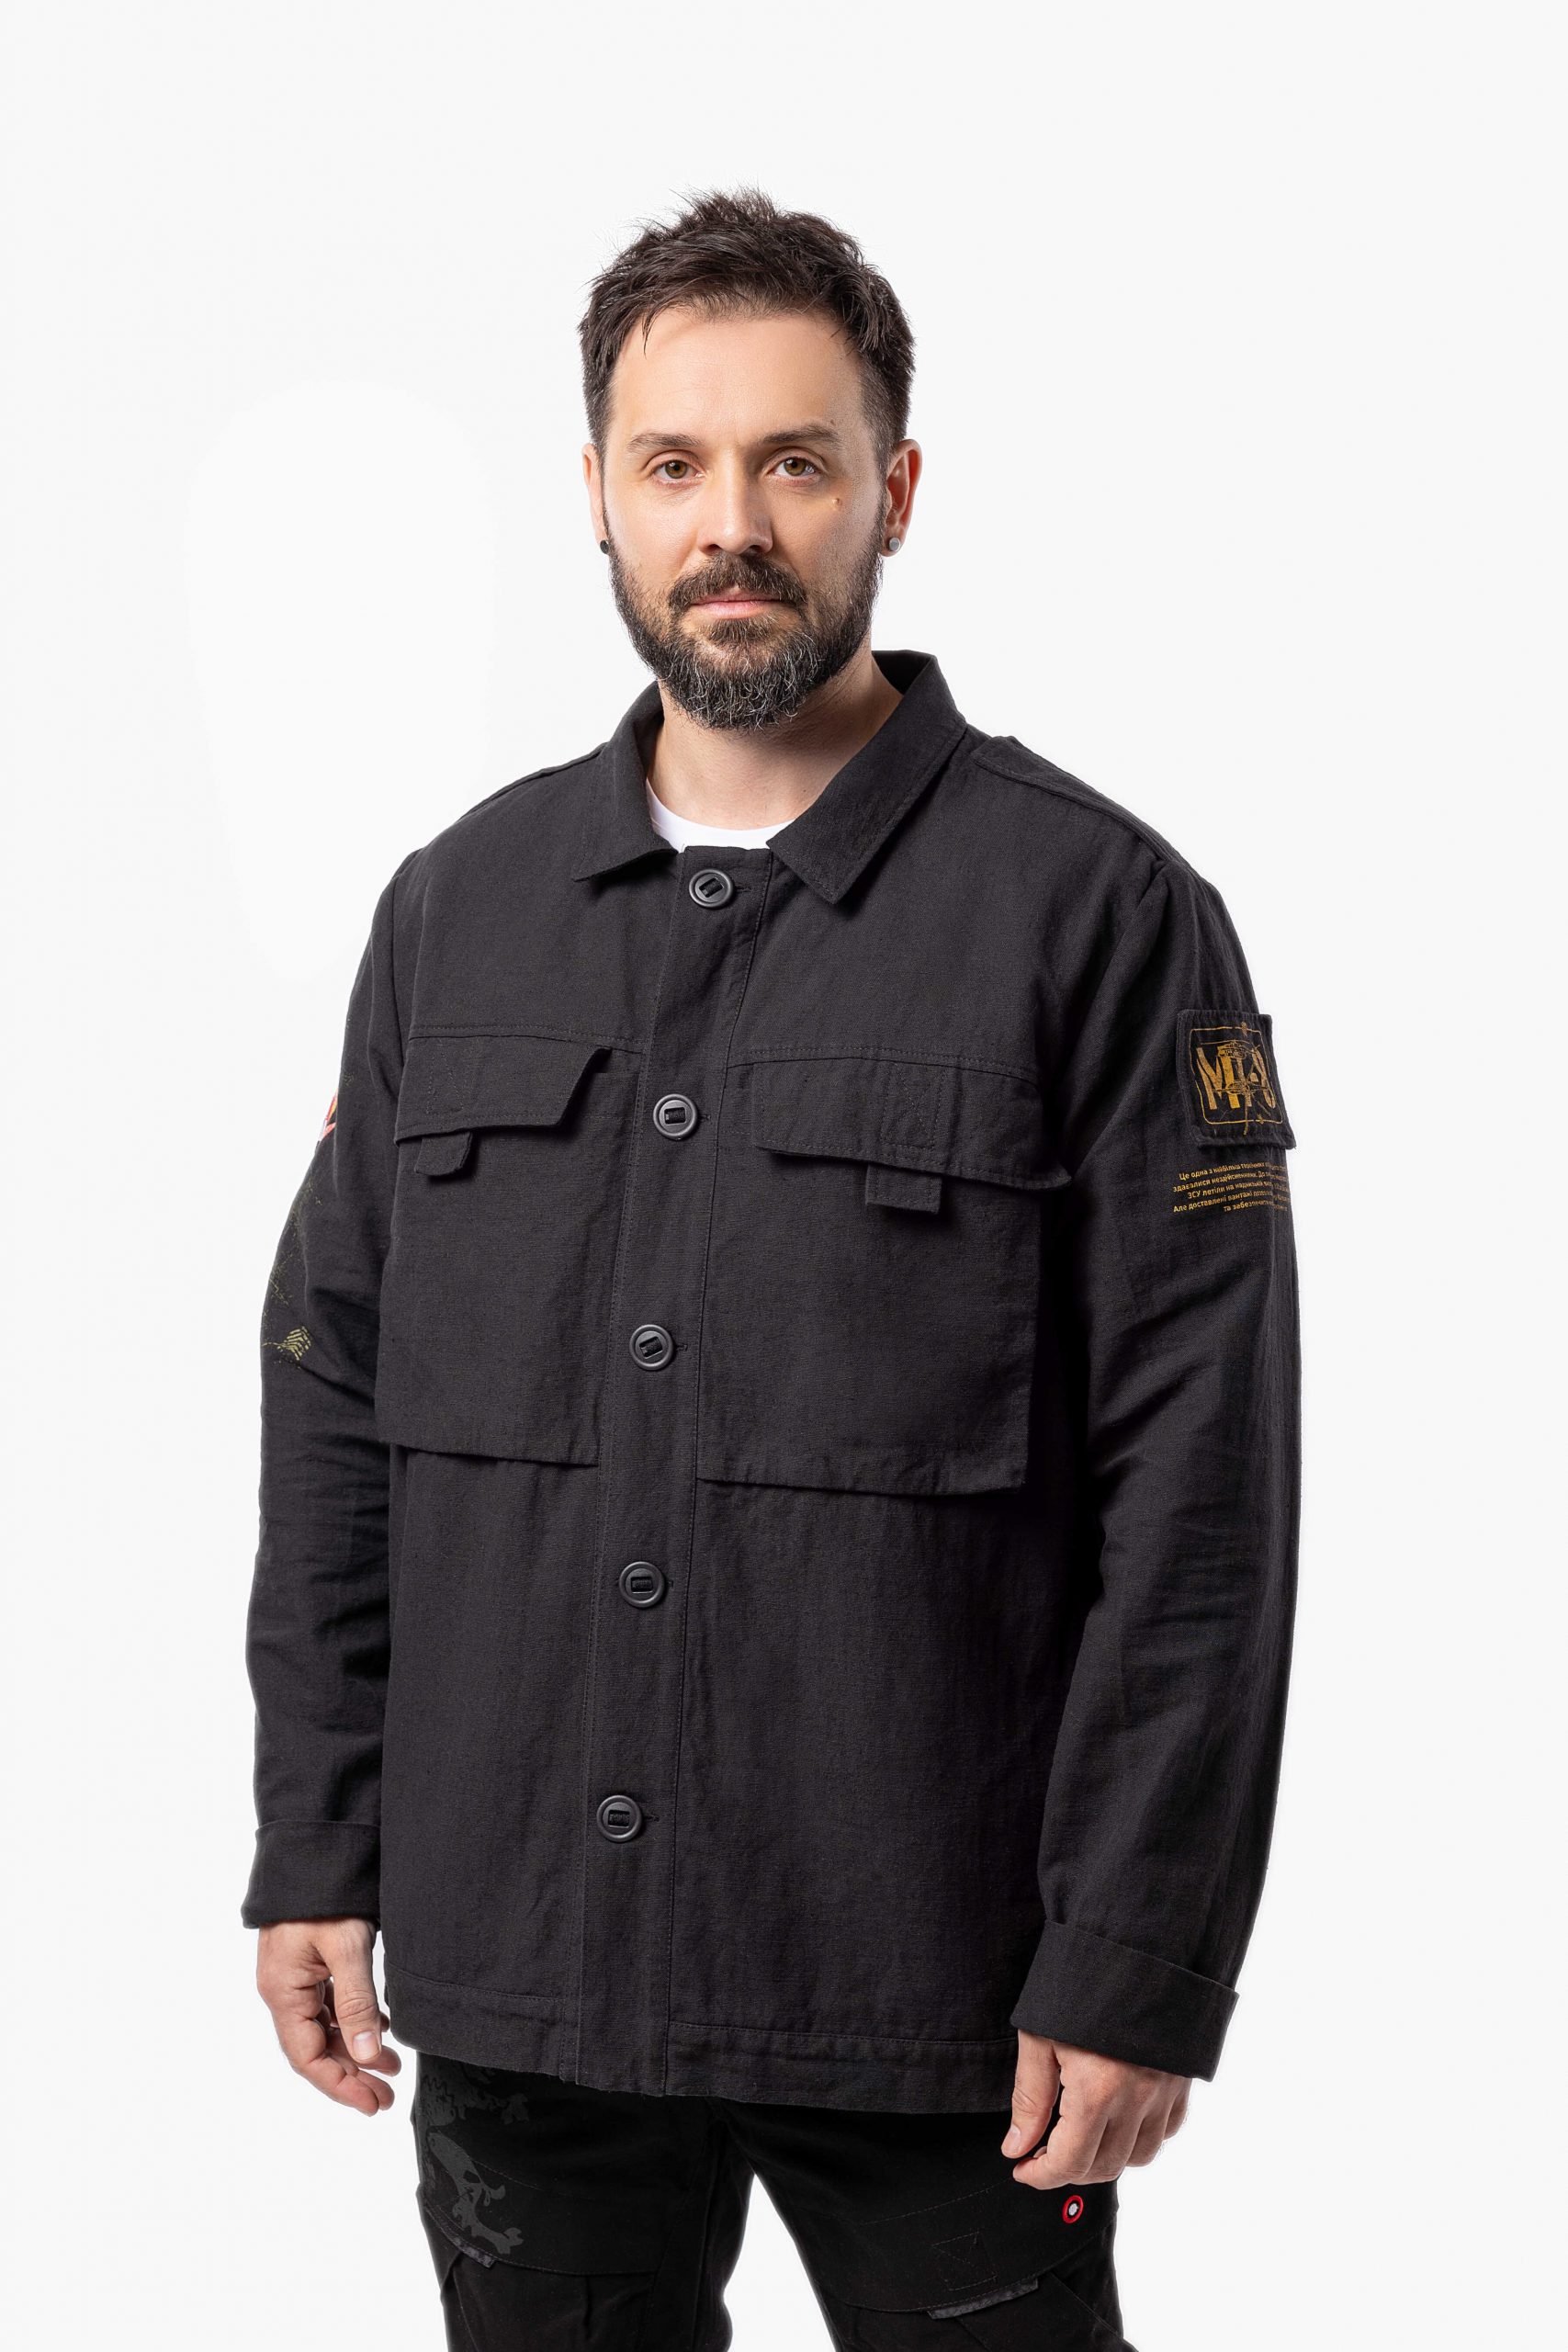 Men's Shirt-Jacket Mission Mariupol. Color black. 3.